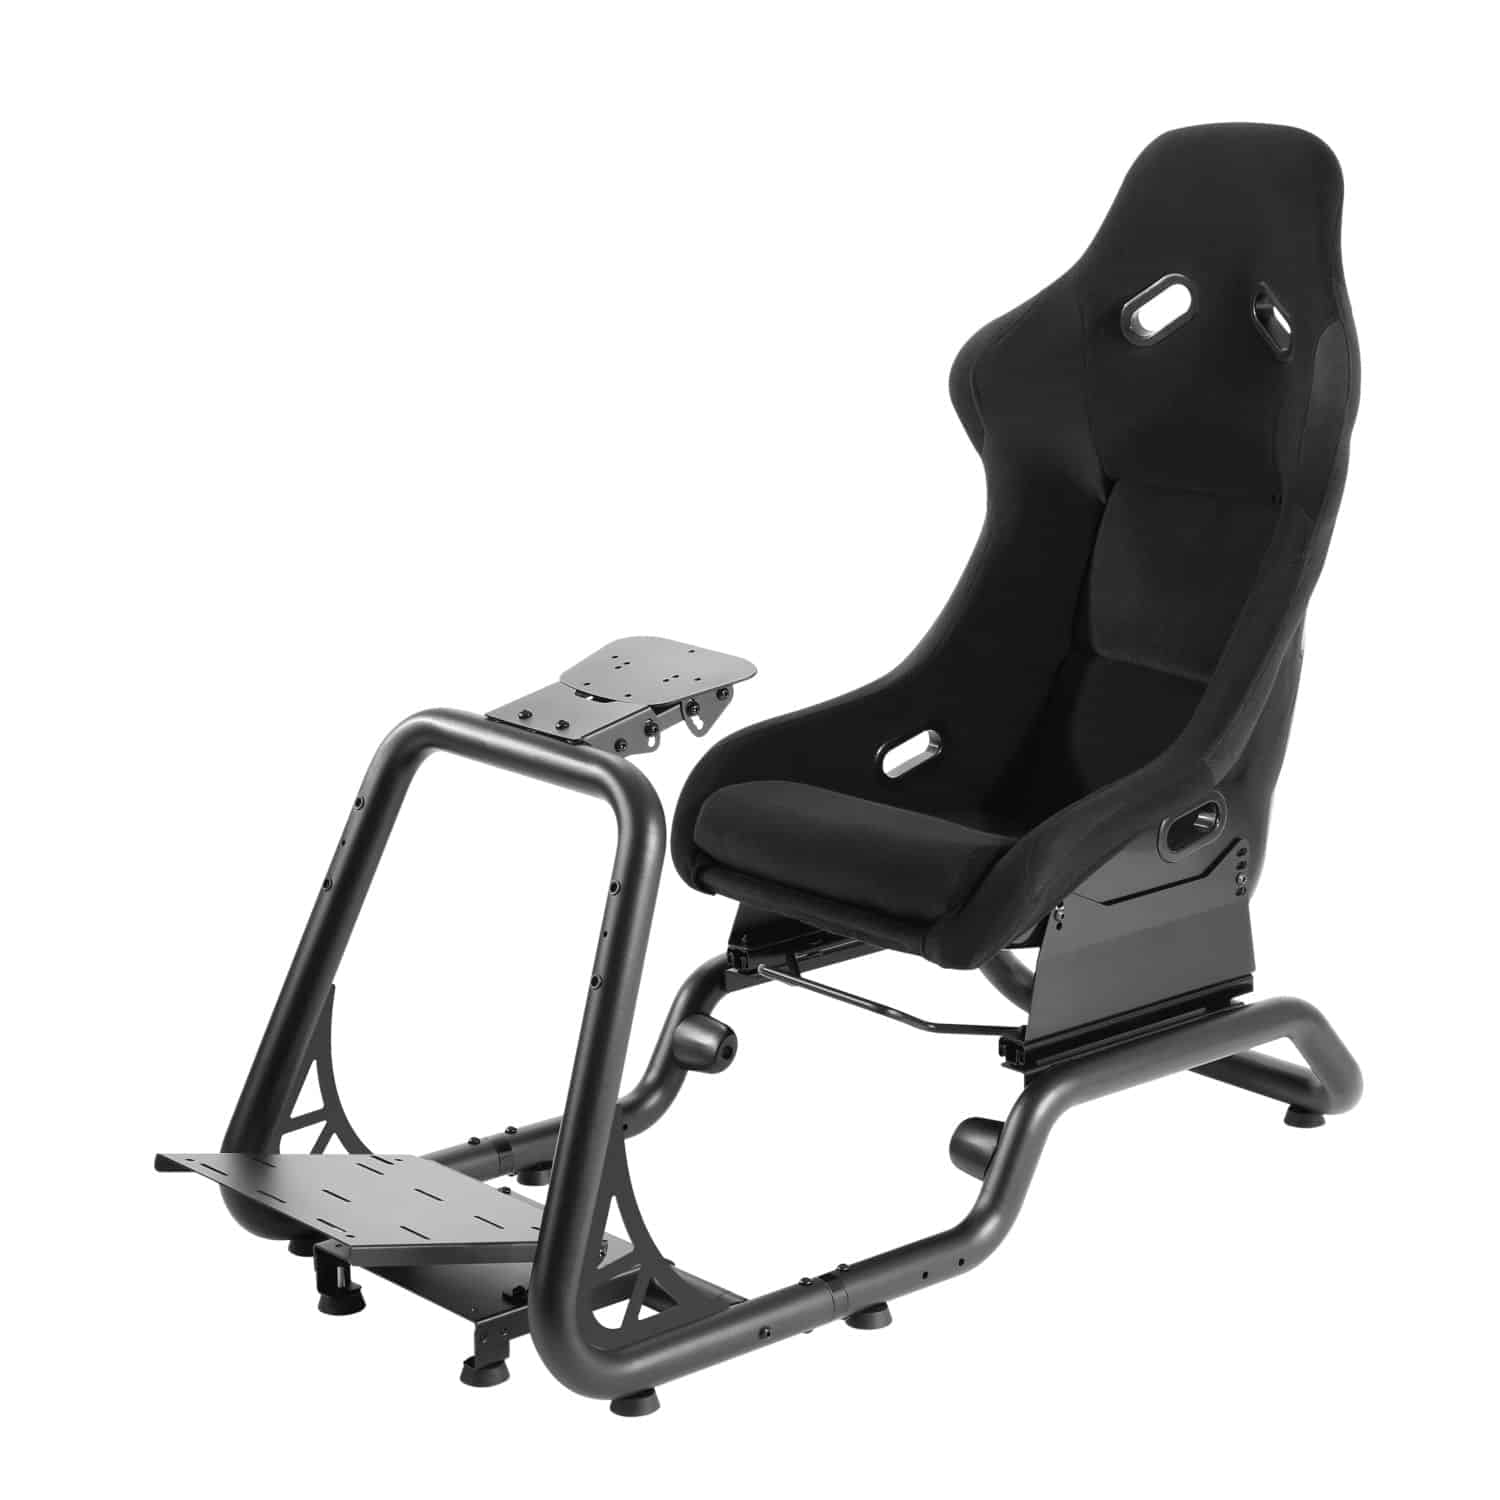 Asiento cockpit simulador de carrera gamer pro Macrotel – Megabits